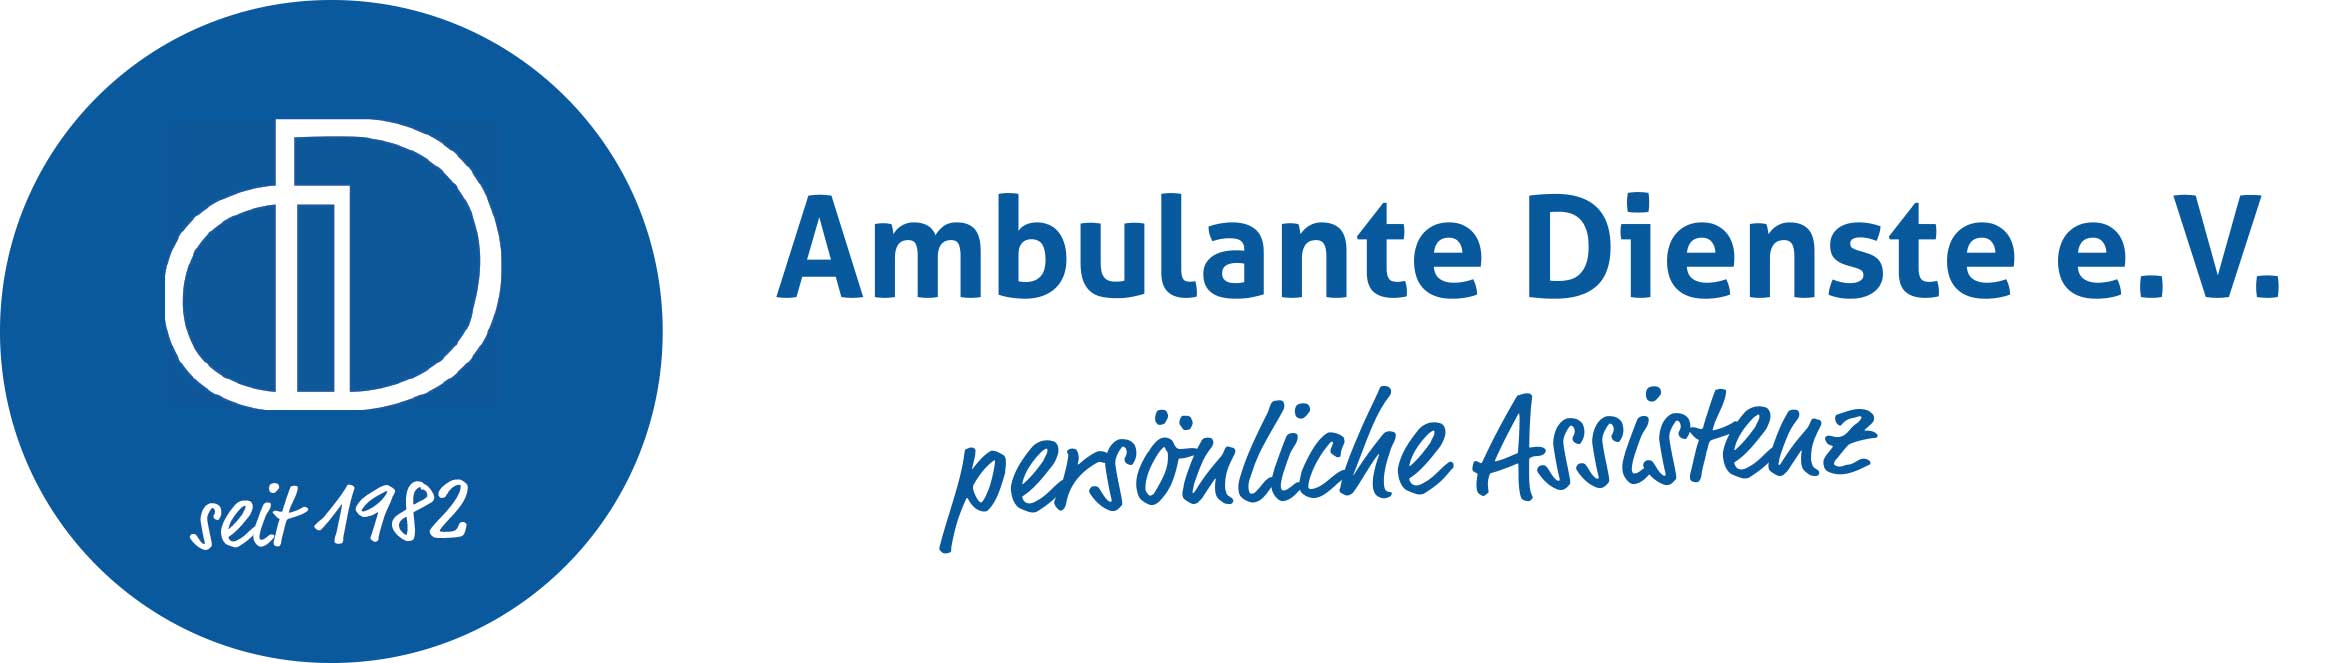 Ambulante-Dienste-eV-Muenster Logo der Ambulanten Dienste e.V., einem 1982 gegründeten deutschen Dienst für persönliche Assistenz.